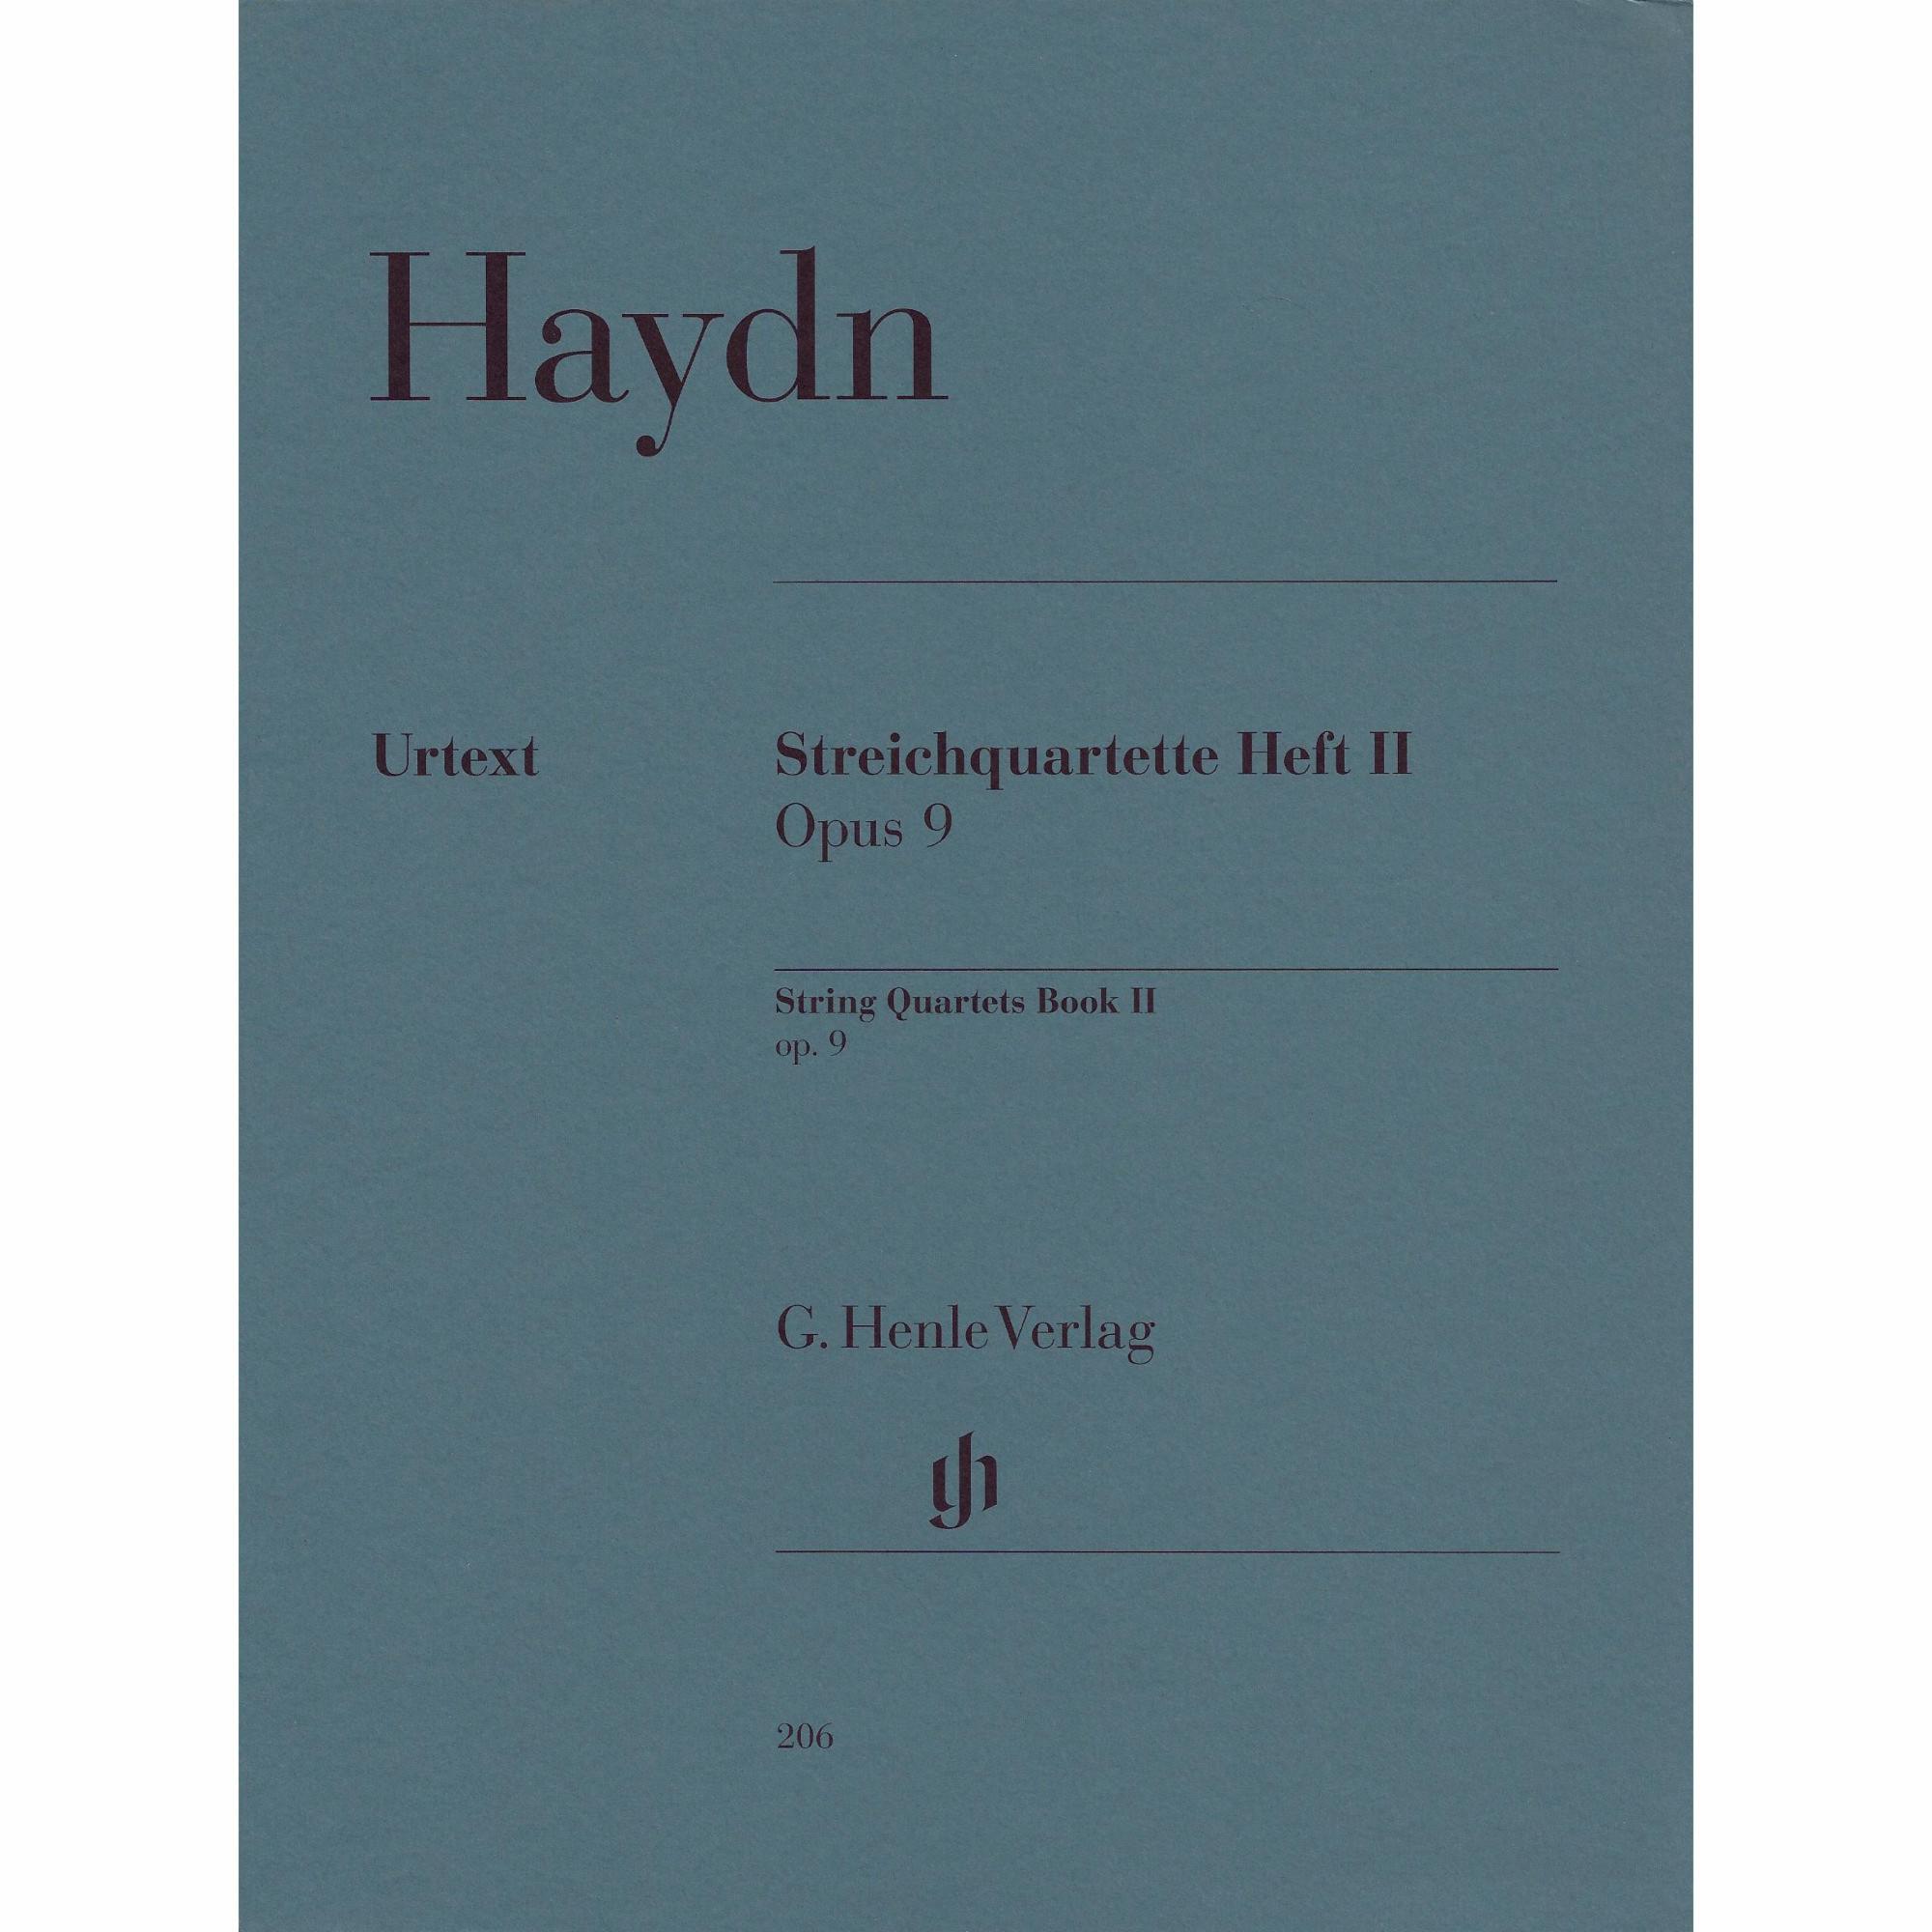 Haydn -- String Quartets, Book II